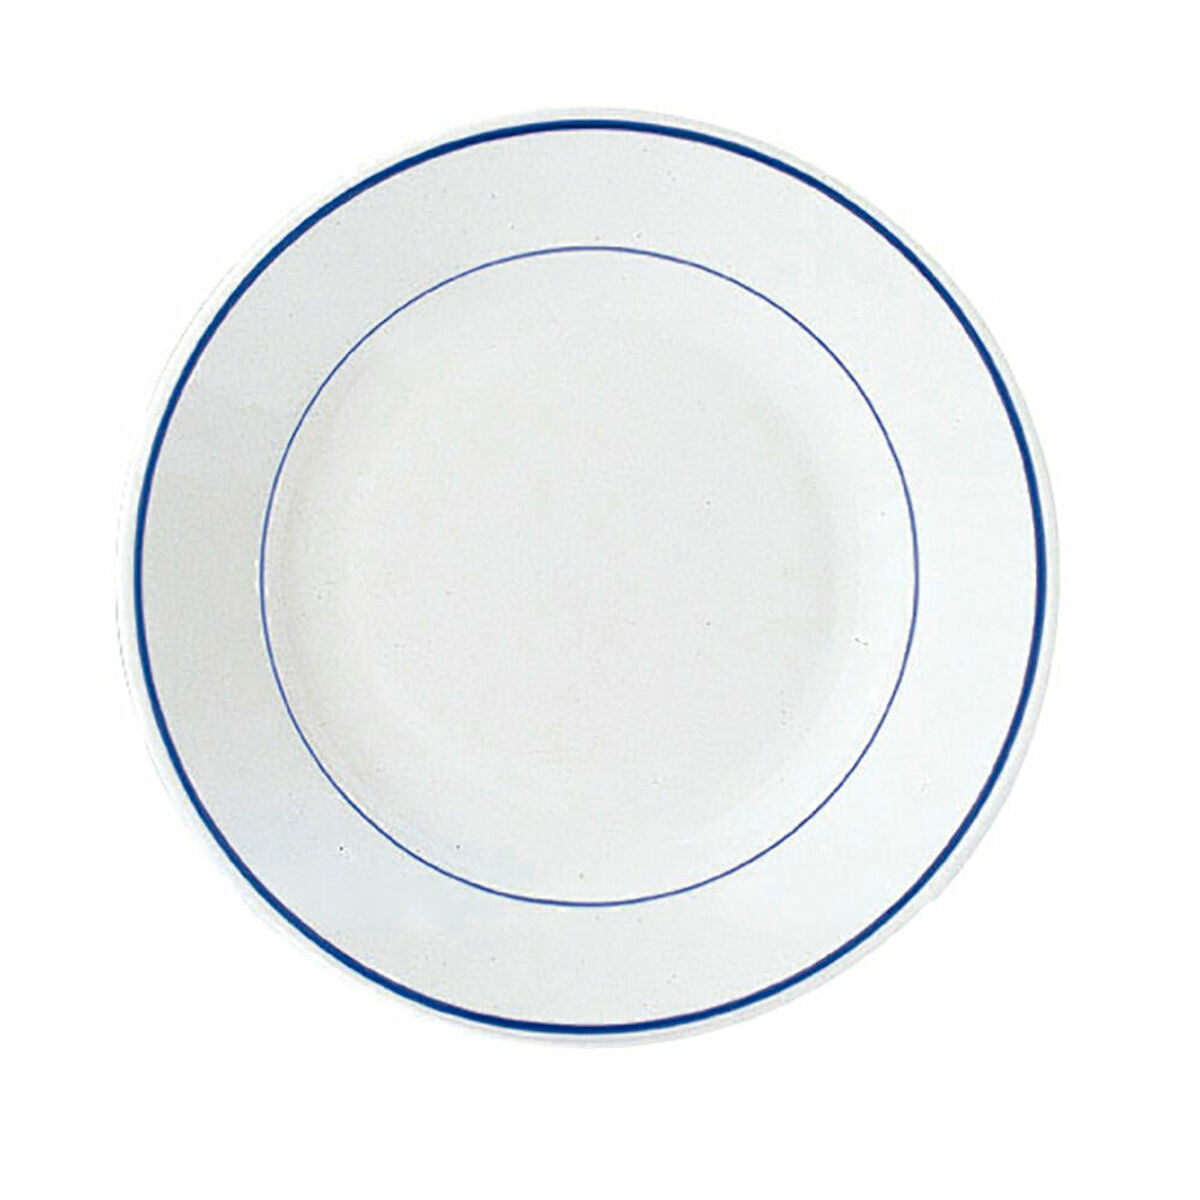 Service de vaisselle Arcoroc Restaurant verre (ø 22,5 cm) (6 uds) - Sapin Belge